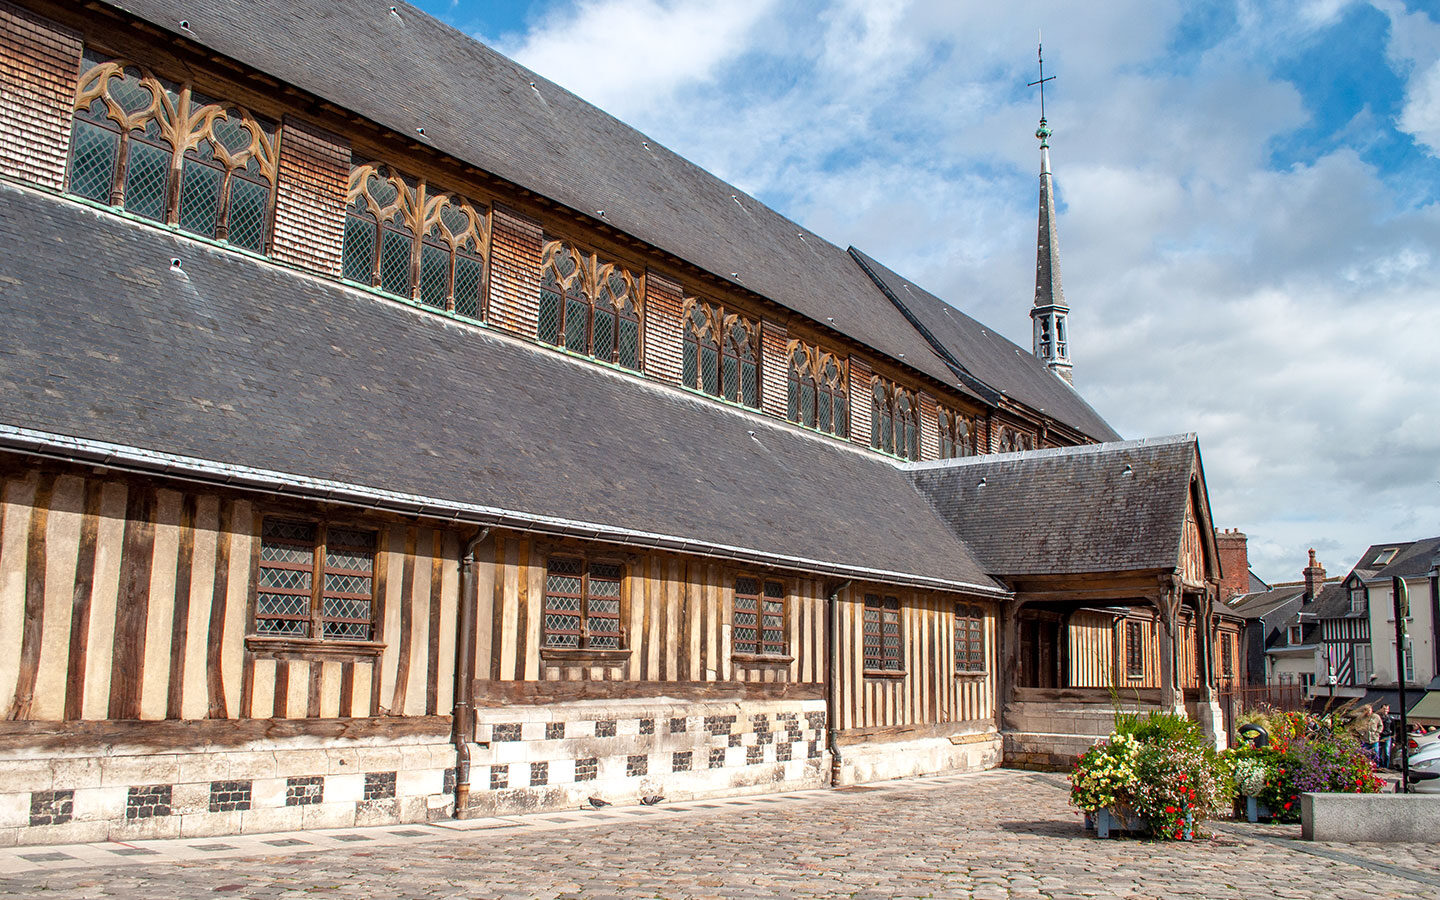 The wooden church, Église Sainte Catherine, in Honfleur